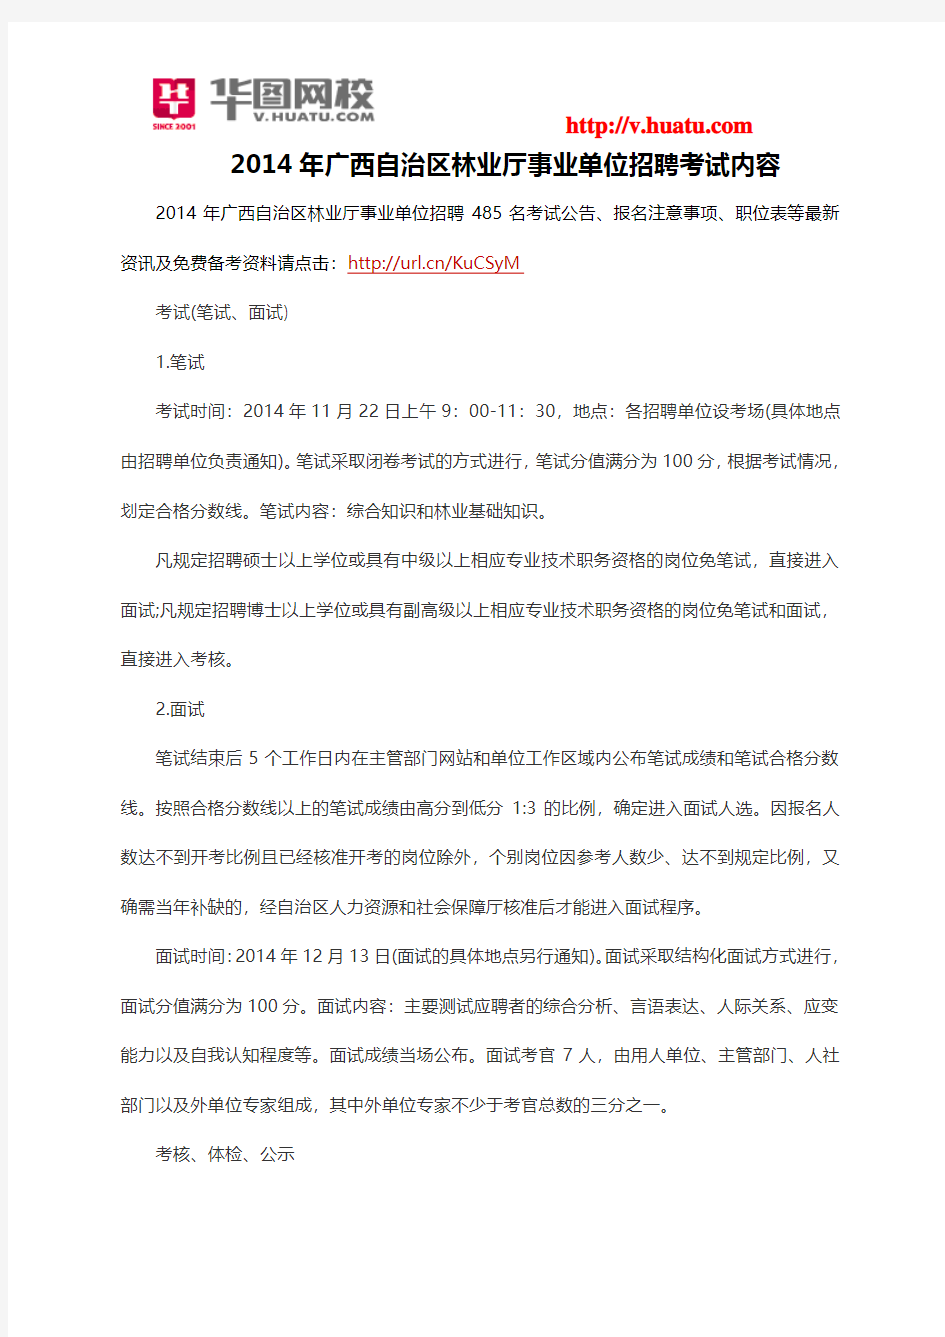 2014年广西自治区林业厅事业单位招聘考试内容